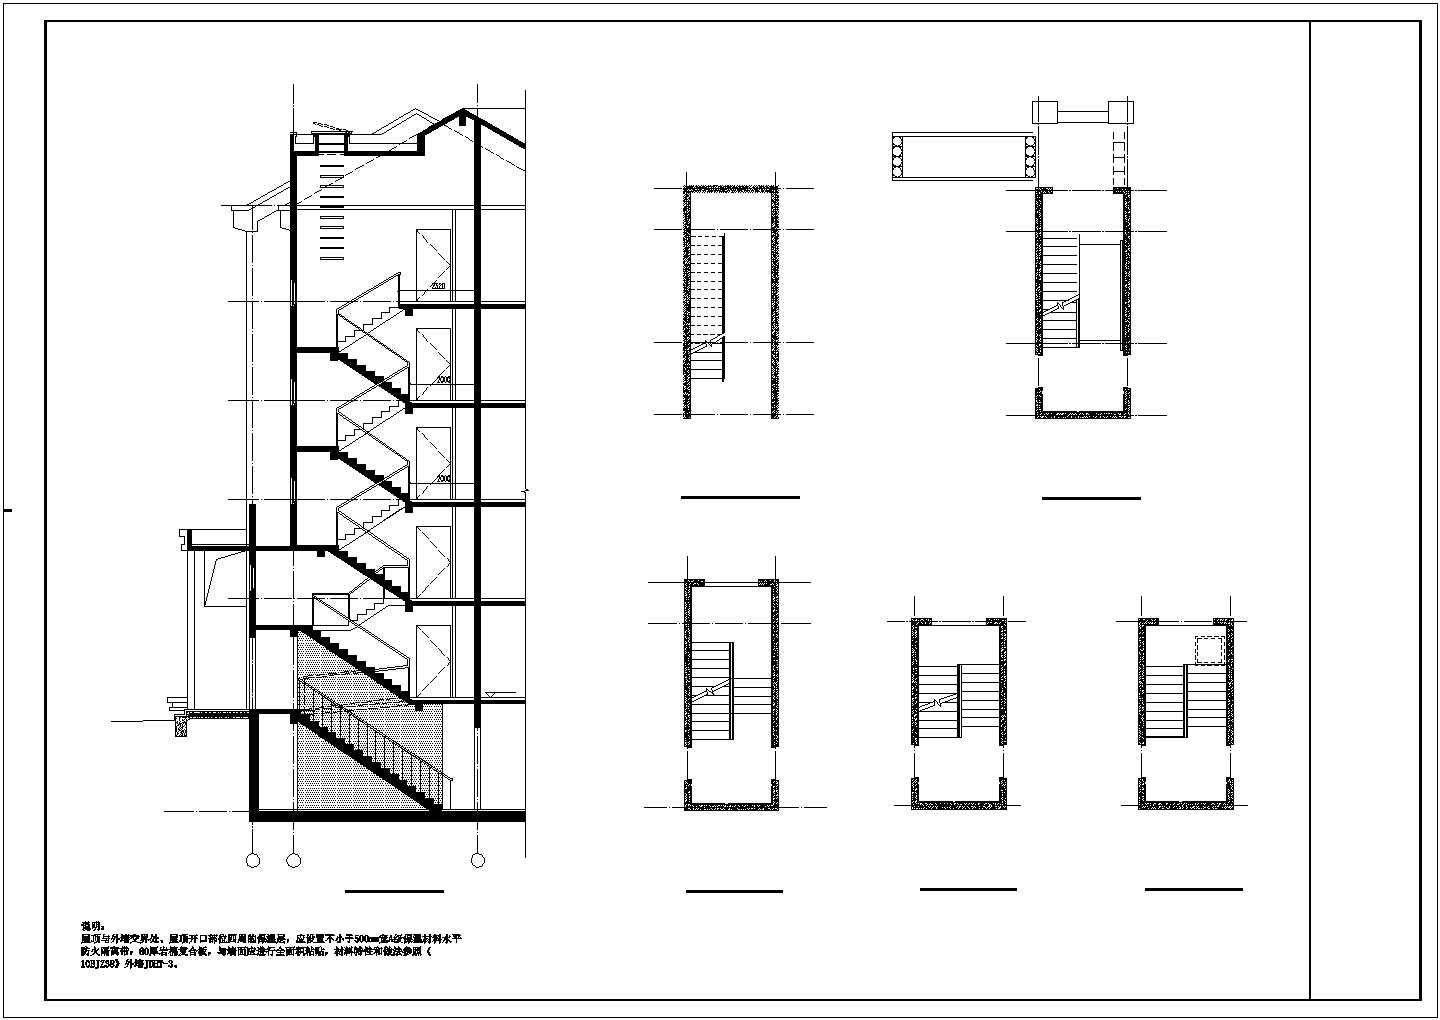 多层住宅楼梯建筑结构施工图